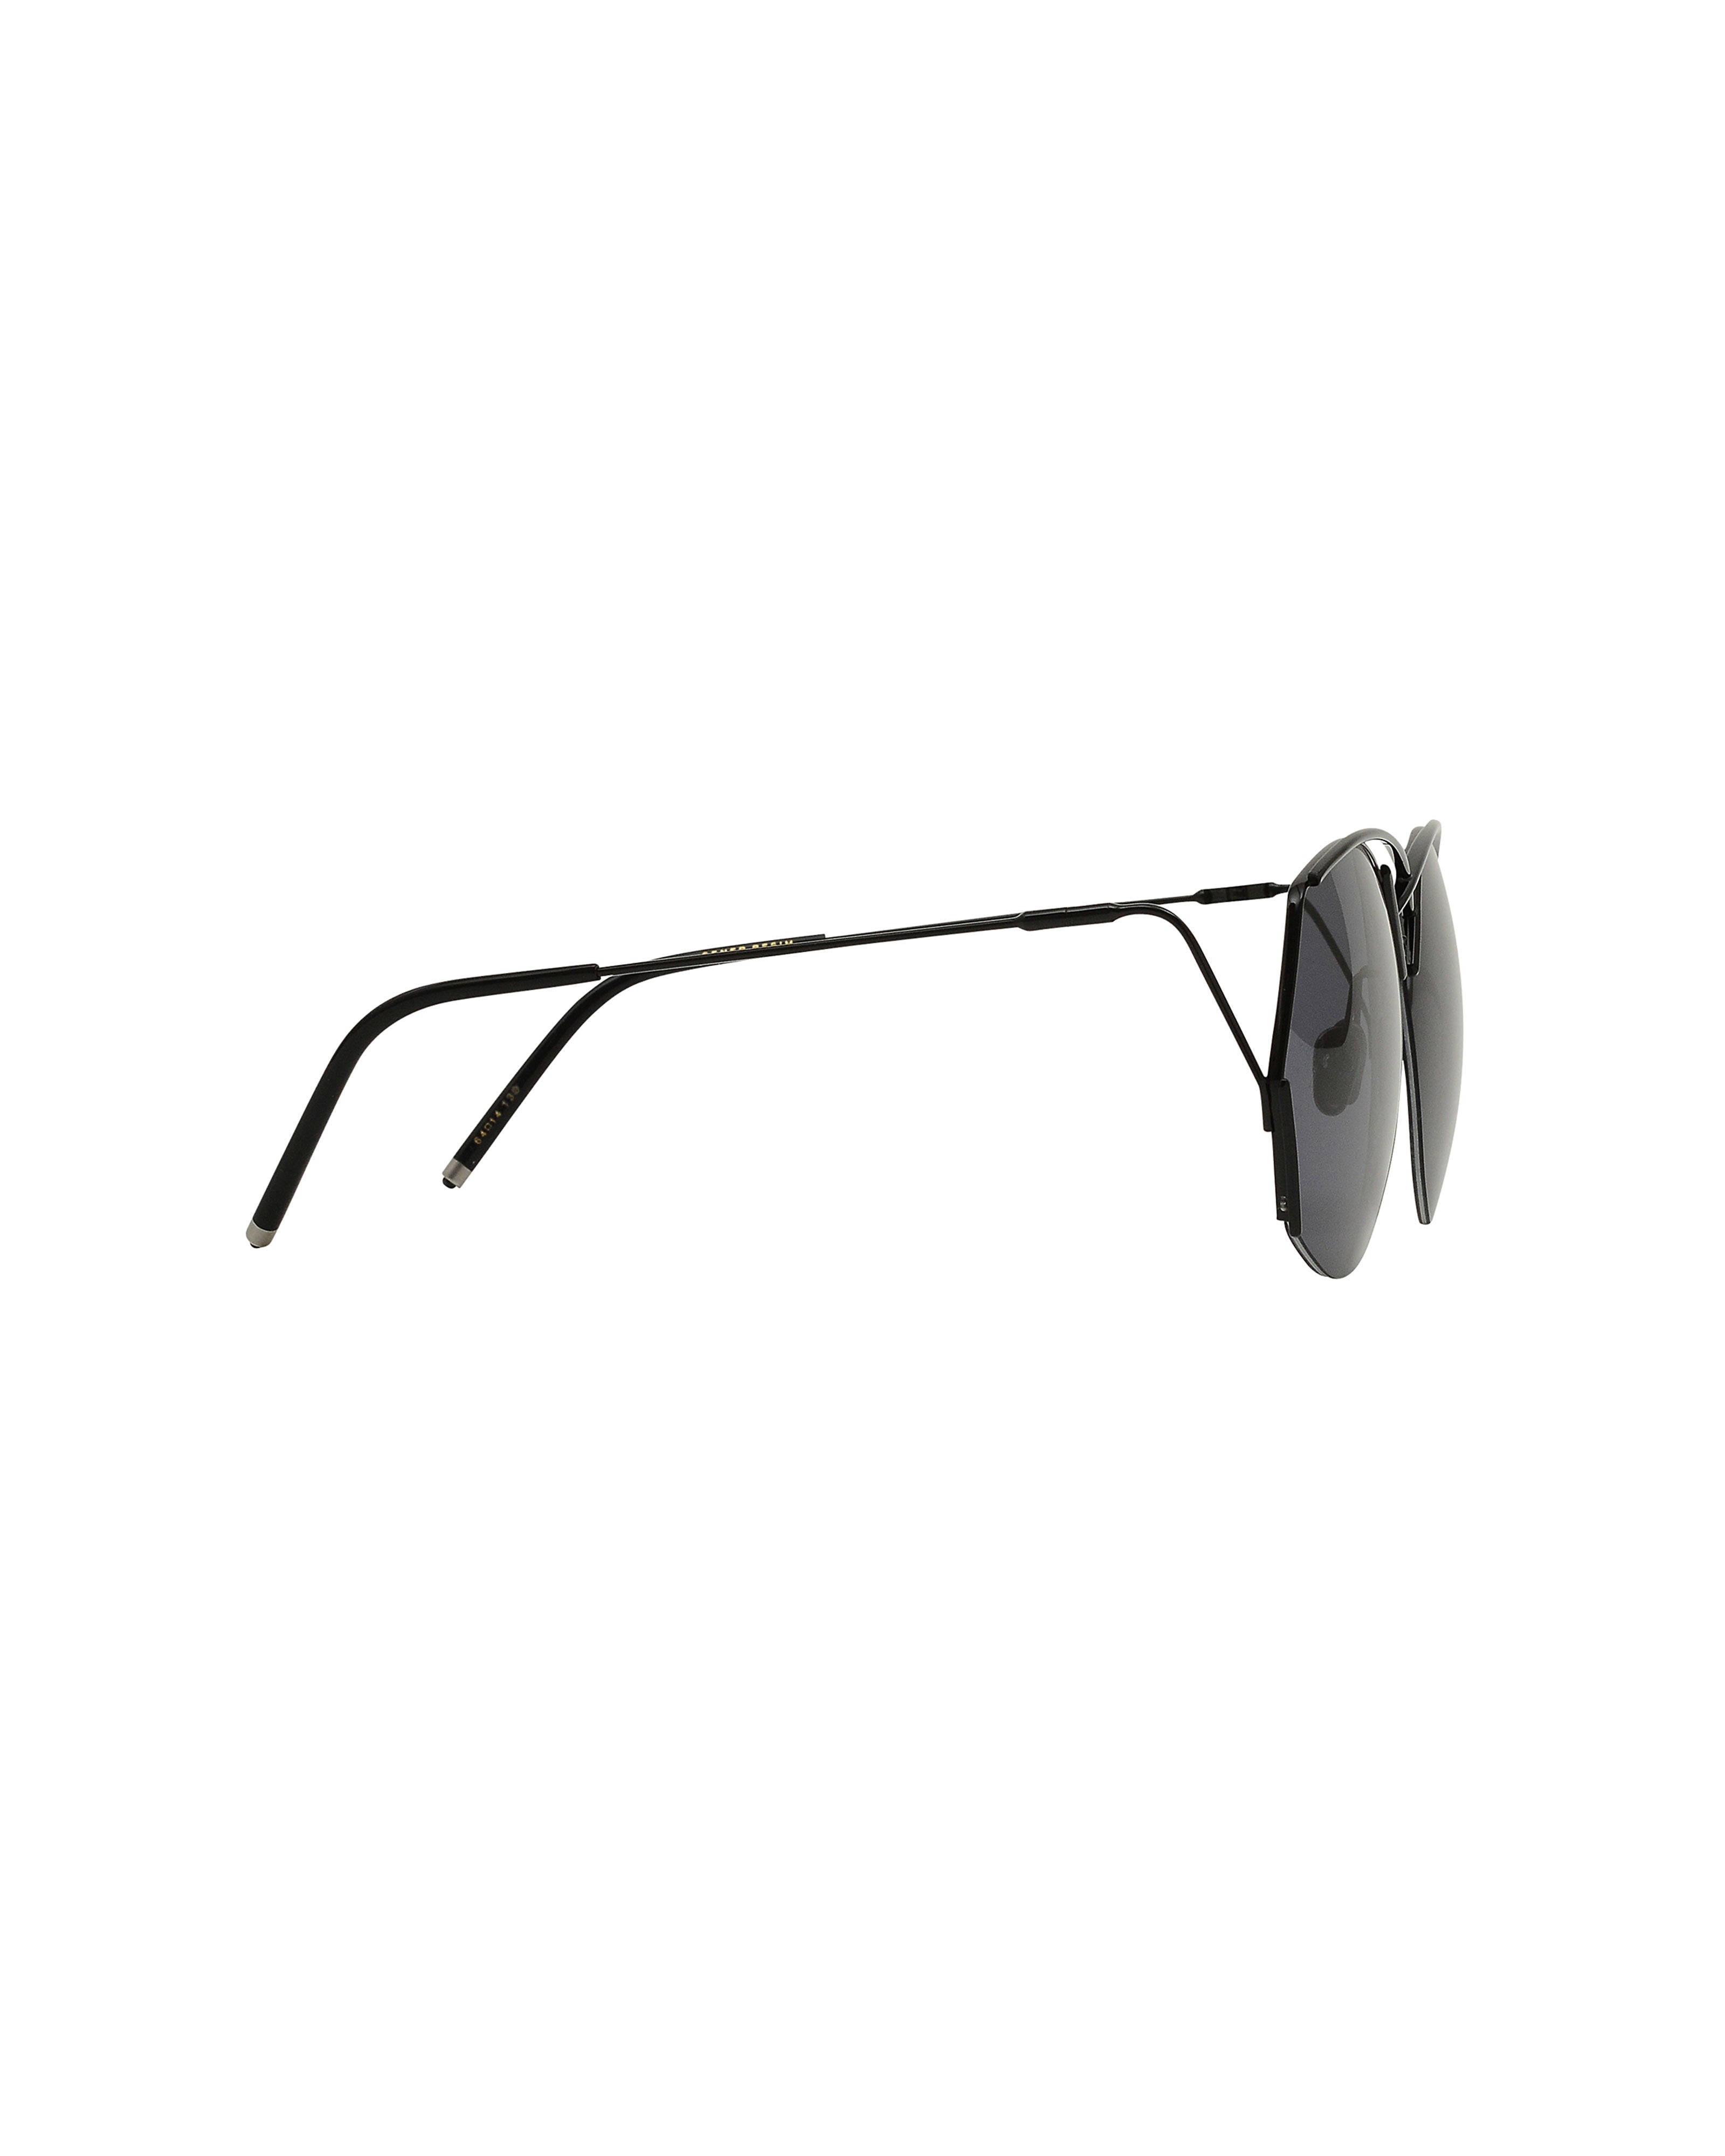 sener-besim-s8-sunglasses-nero-graphite-luxury-eyewear